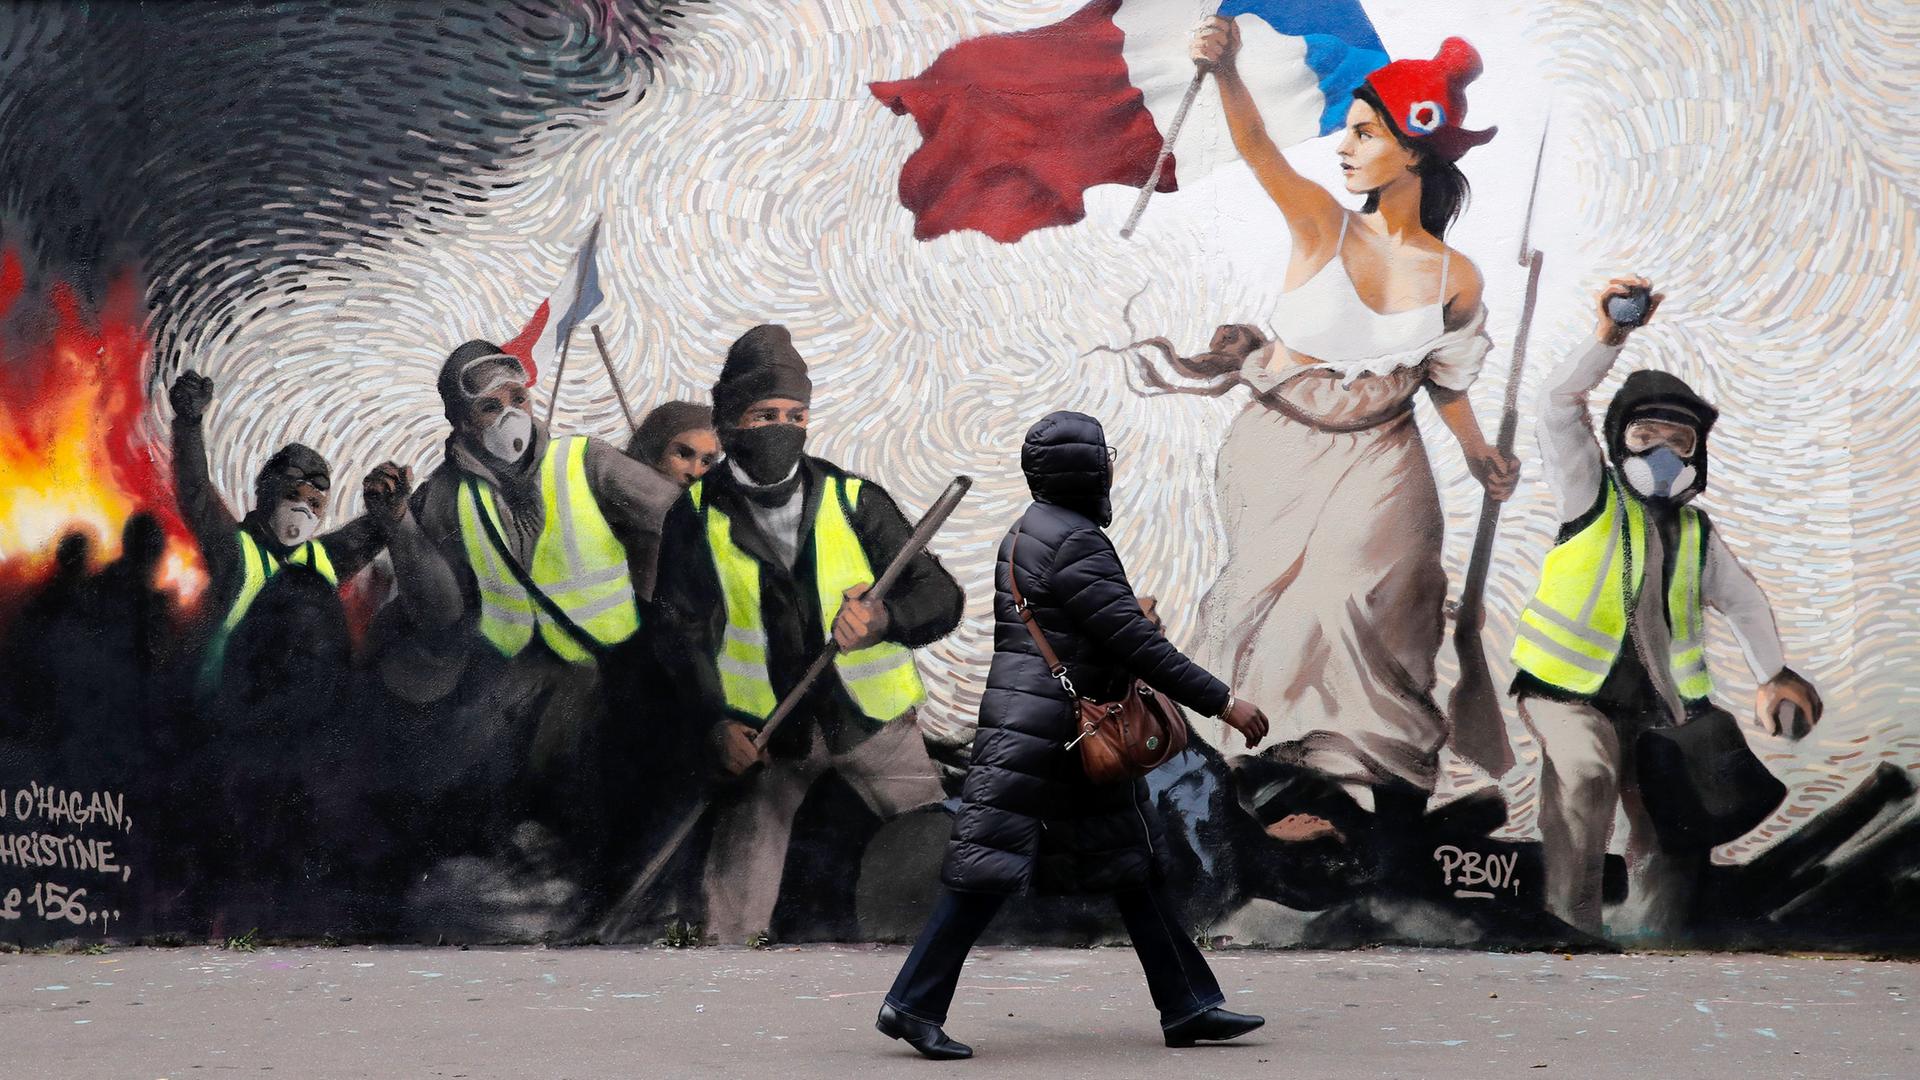 Eine Frau geht an einem Wandbild des Straßenkünstlers Pboy vorbei vorbei